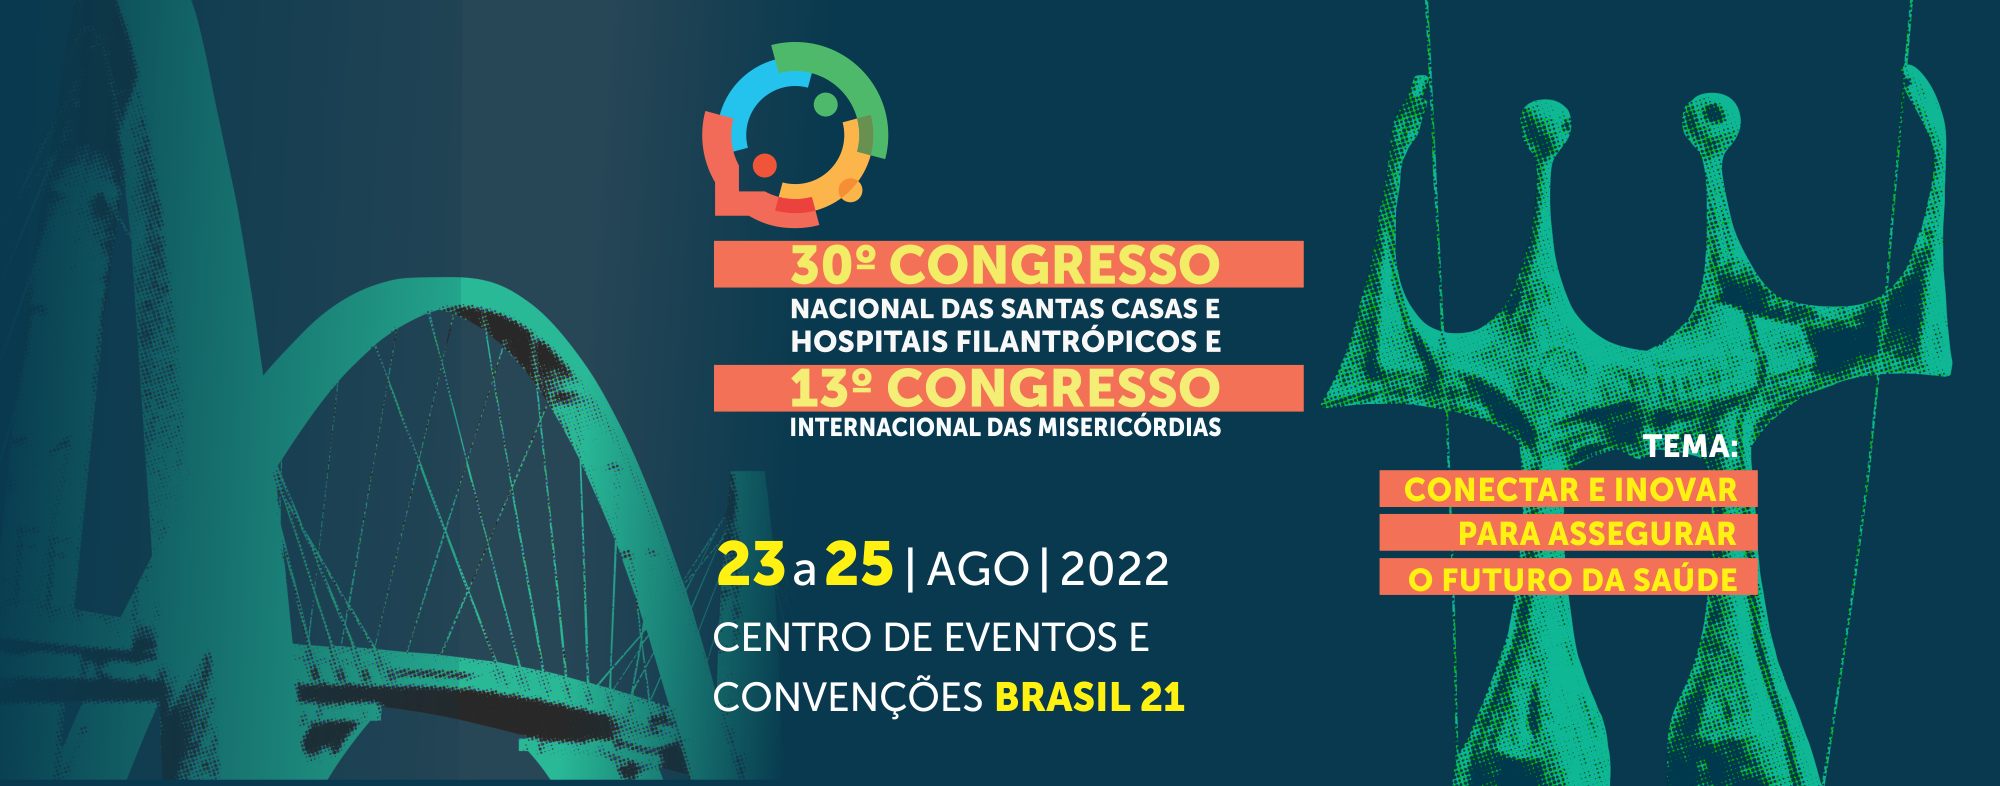 30º Congresso Nacional das Santas Casas e Hospitais Filantrópicos